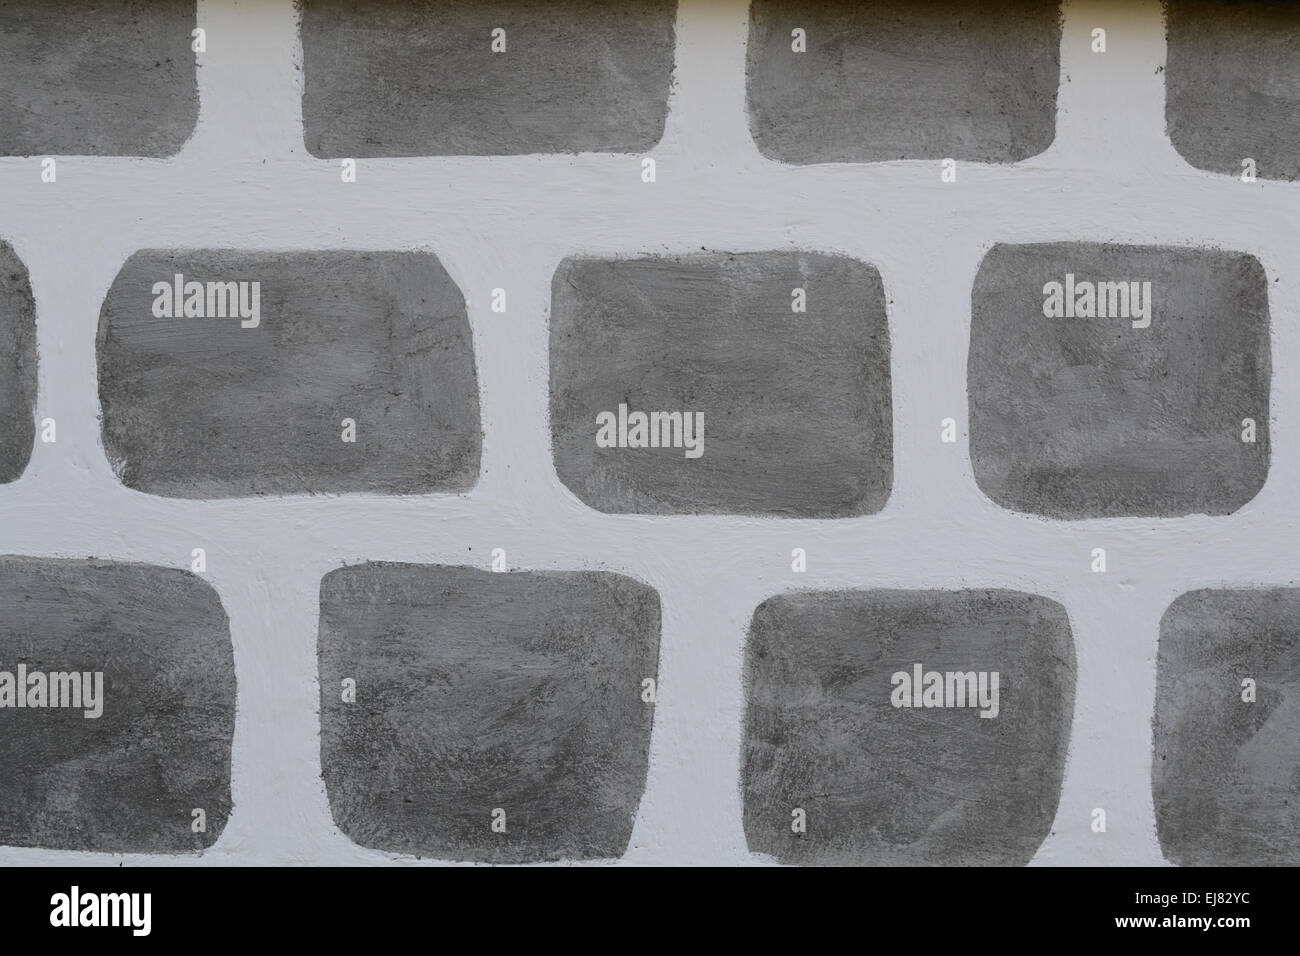 Finta pietra immagini e fotografie stock ad alta risoluzione - Alamy